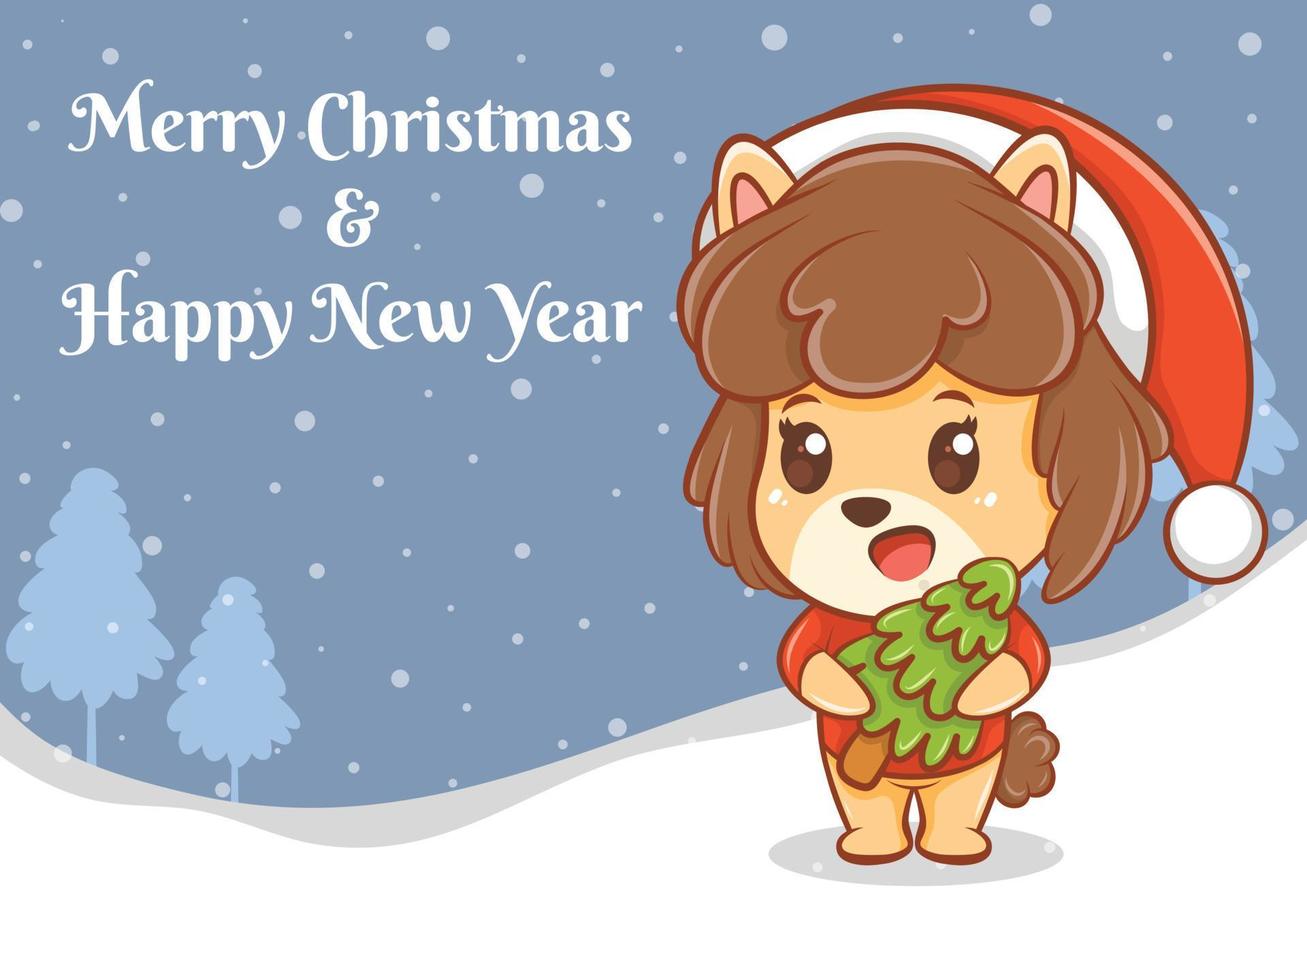 söt valp seriefigur med god jul och gott nytt år hälsning banner. vektor